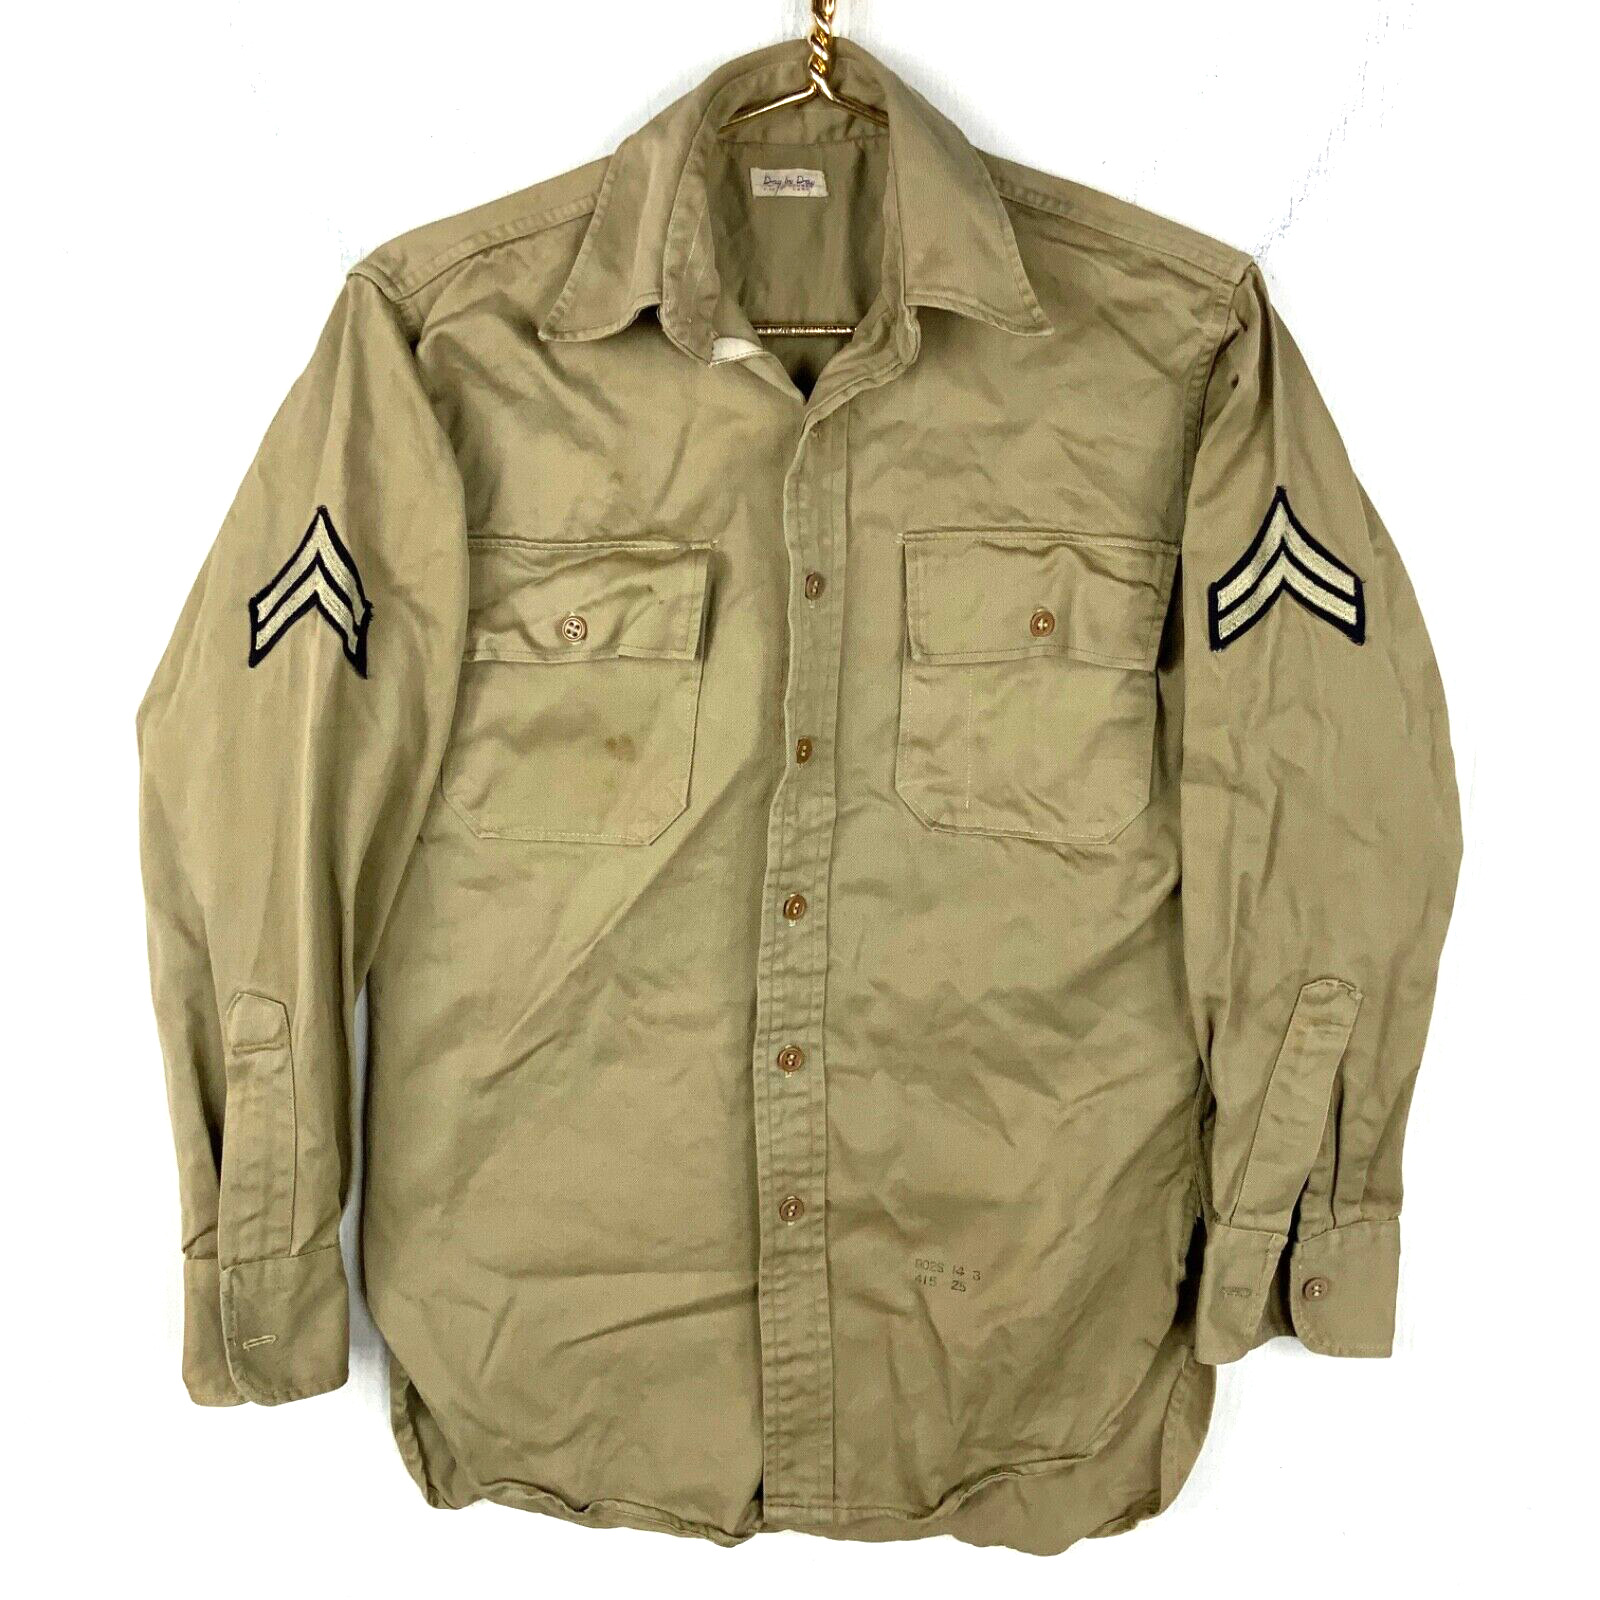 Vintage Us Army Og-107 Button Up Shirt Day By Day Medium Beige Vietnam Era 60s